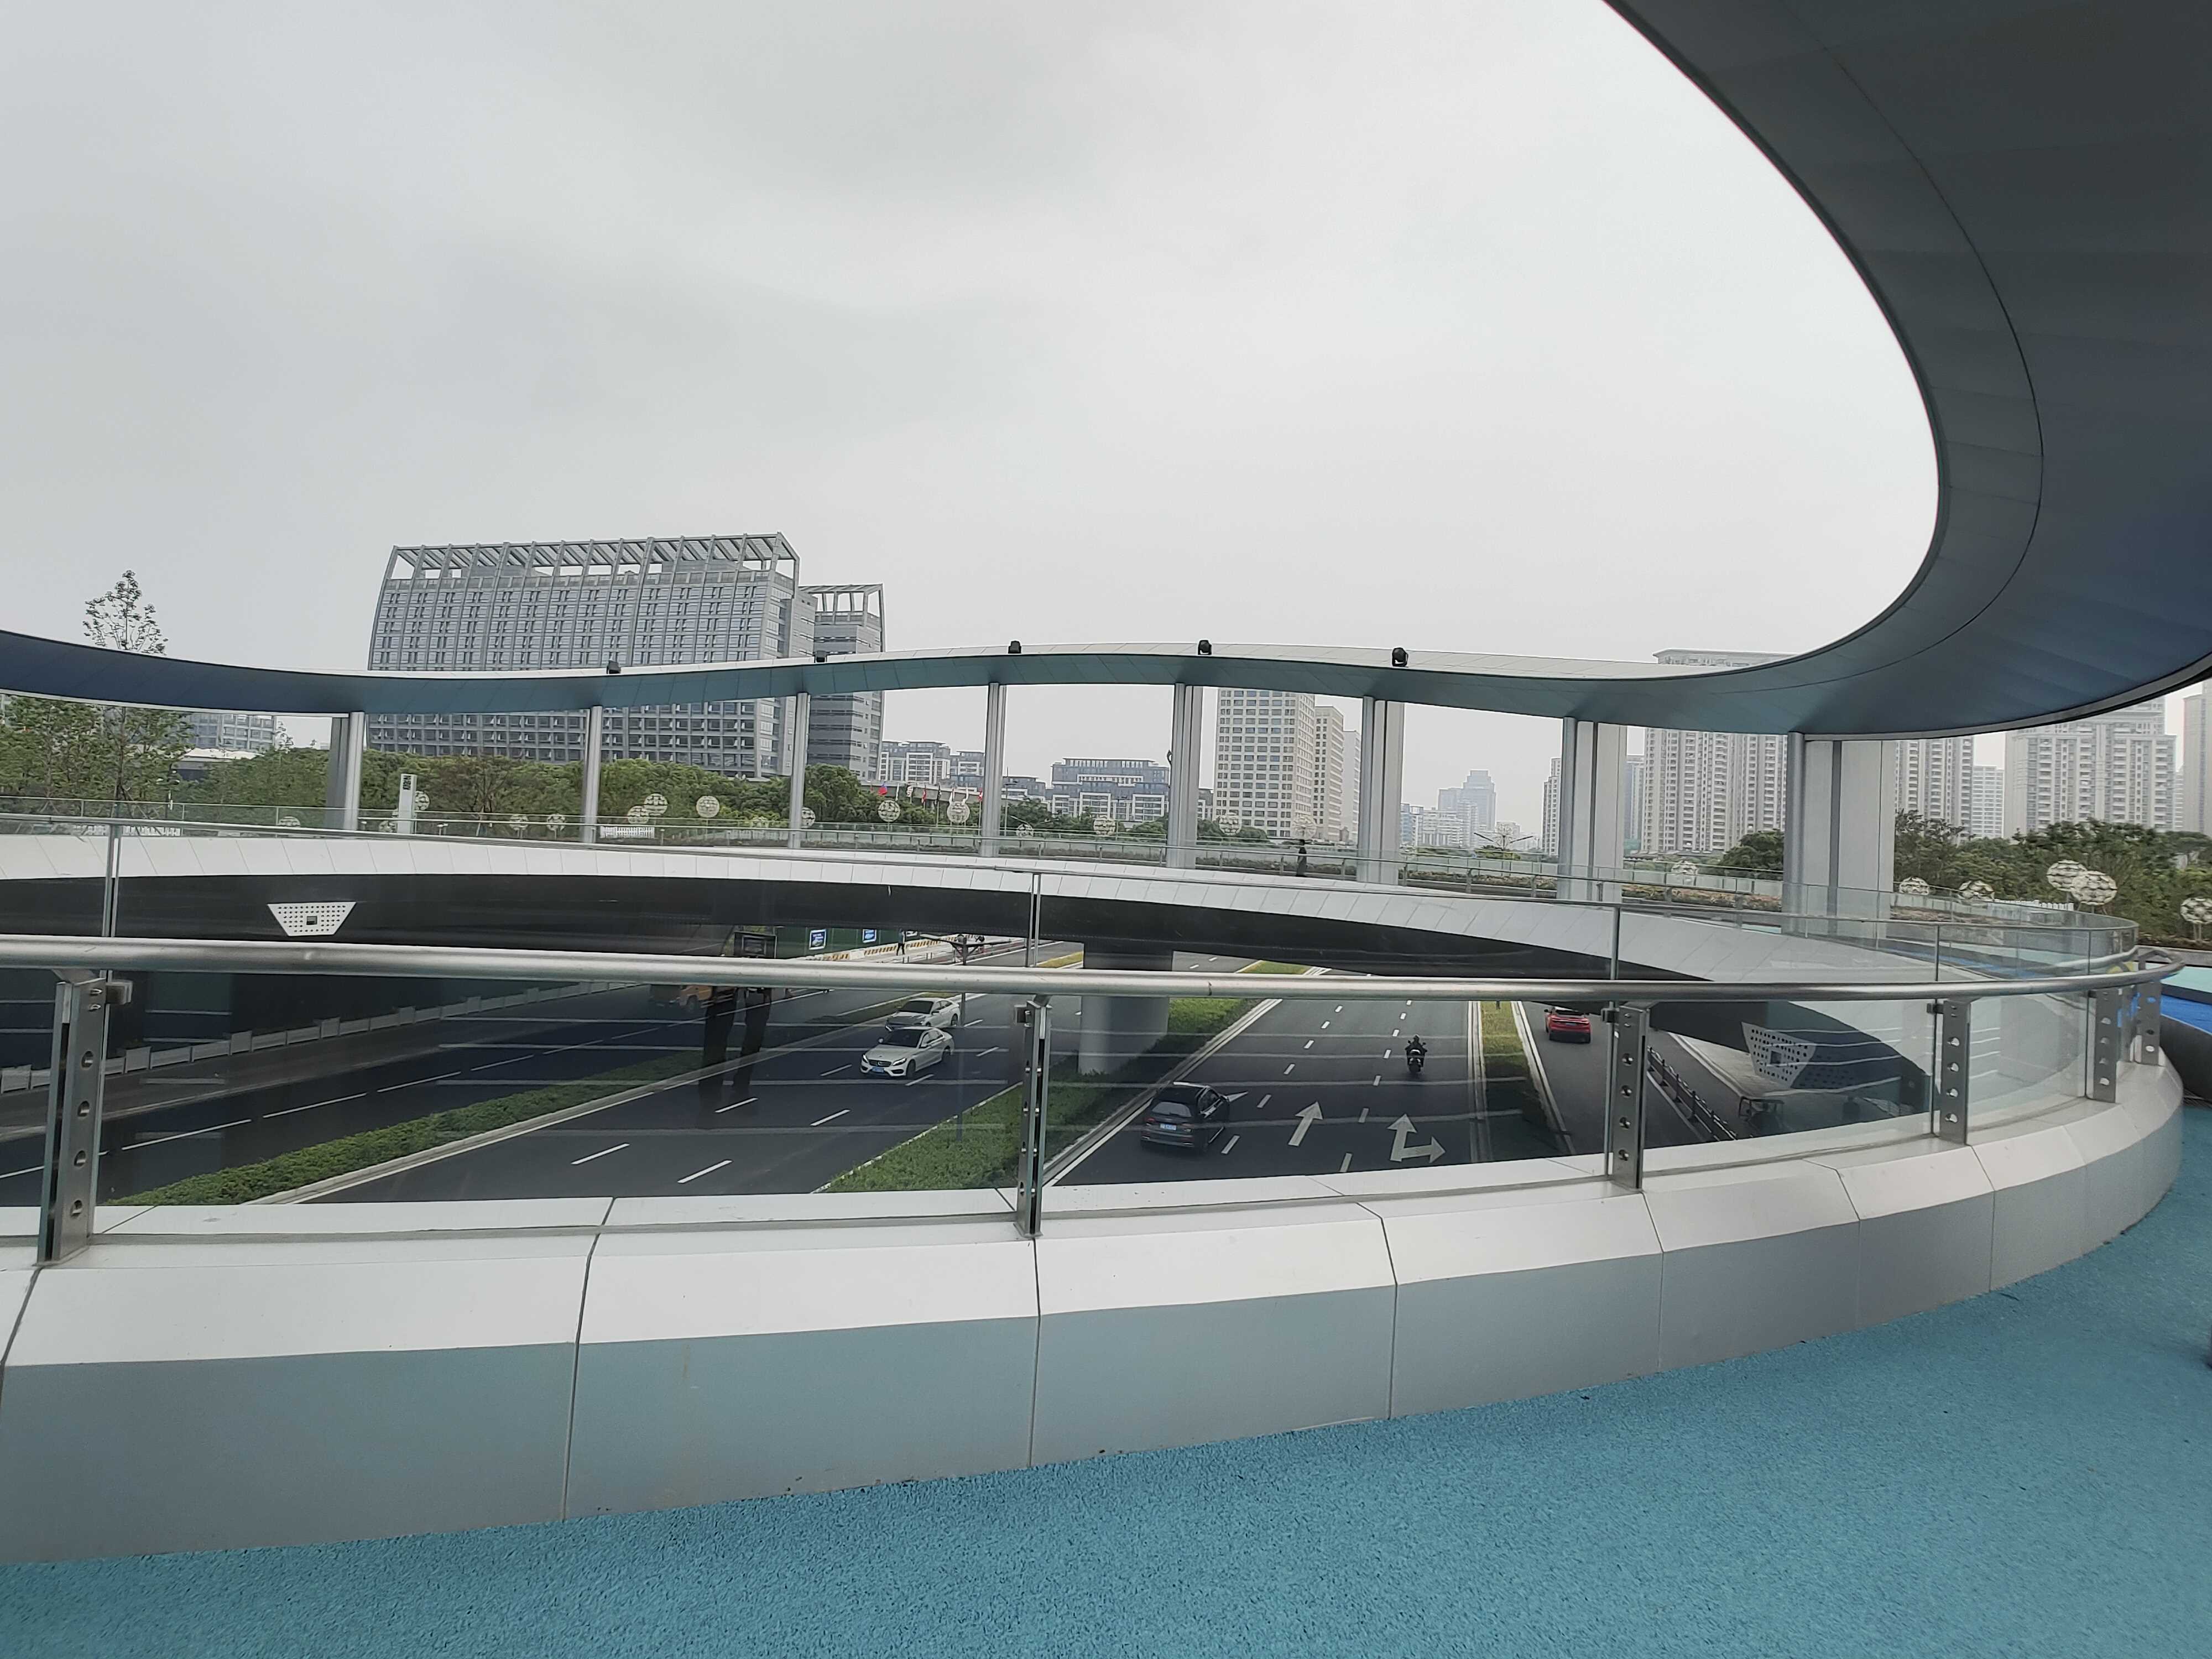 10、长江路过街绿廊工程：考虑景观效果，桥上设置通透性较好的玻璃栏杆